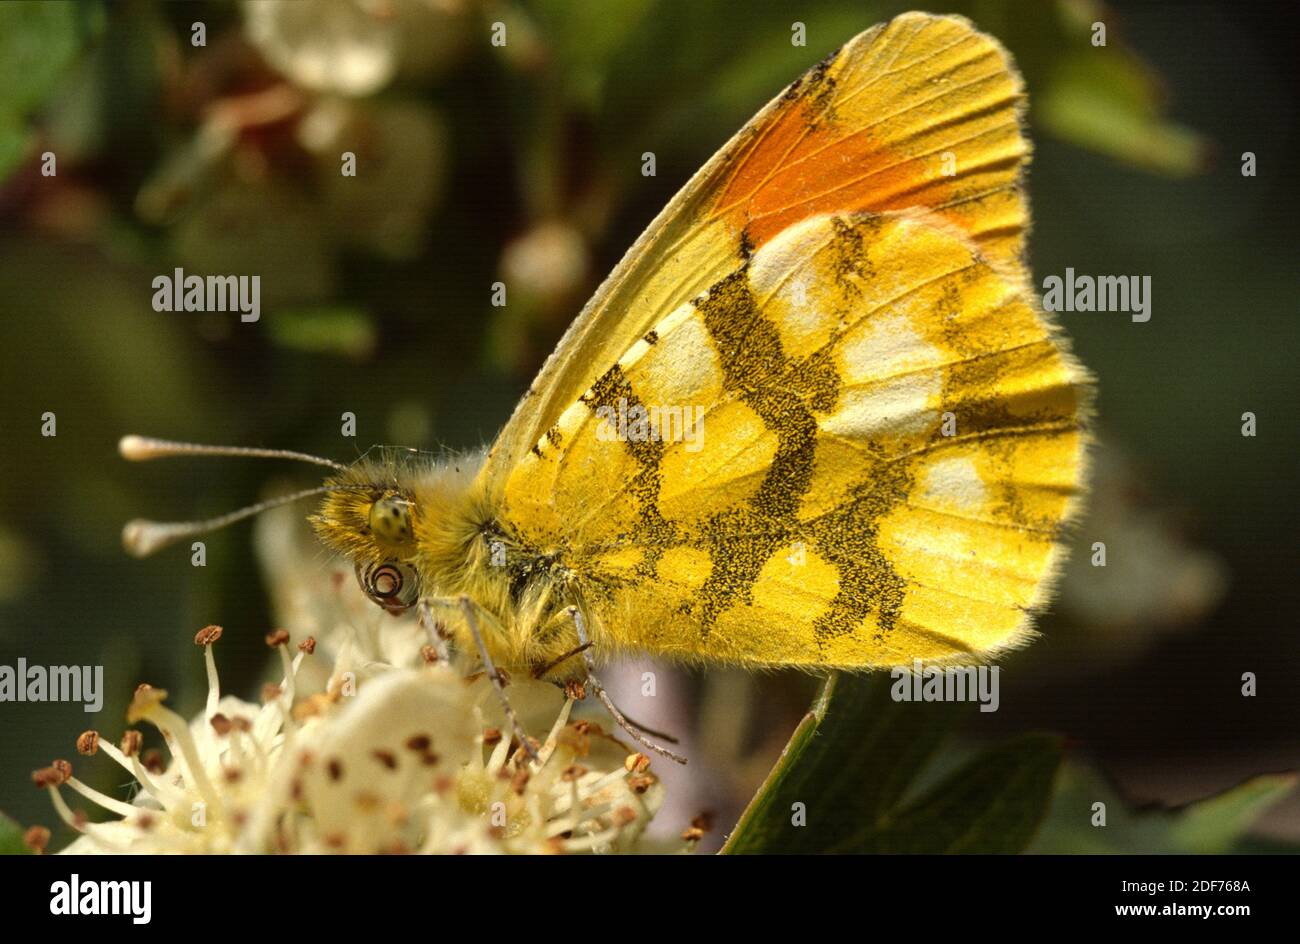 La pointe orange de Provence (Anthocharis euphénoides) est un papillon originaire de la péninsule ibérique, du sud de la France et de l'Italie. Adulte, homme Banque D'Images